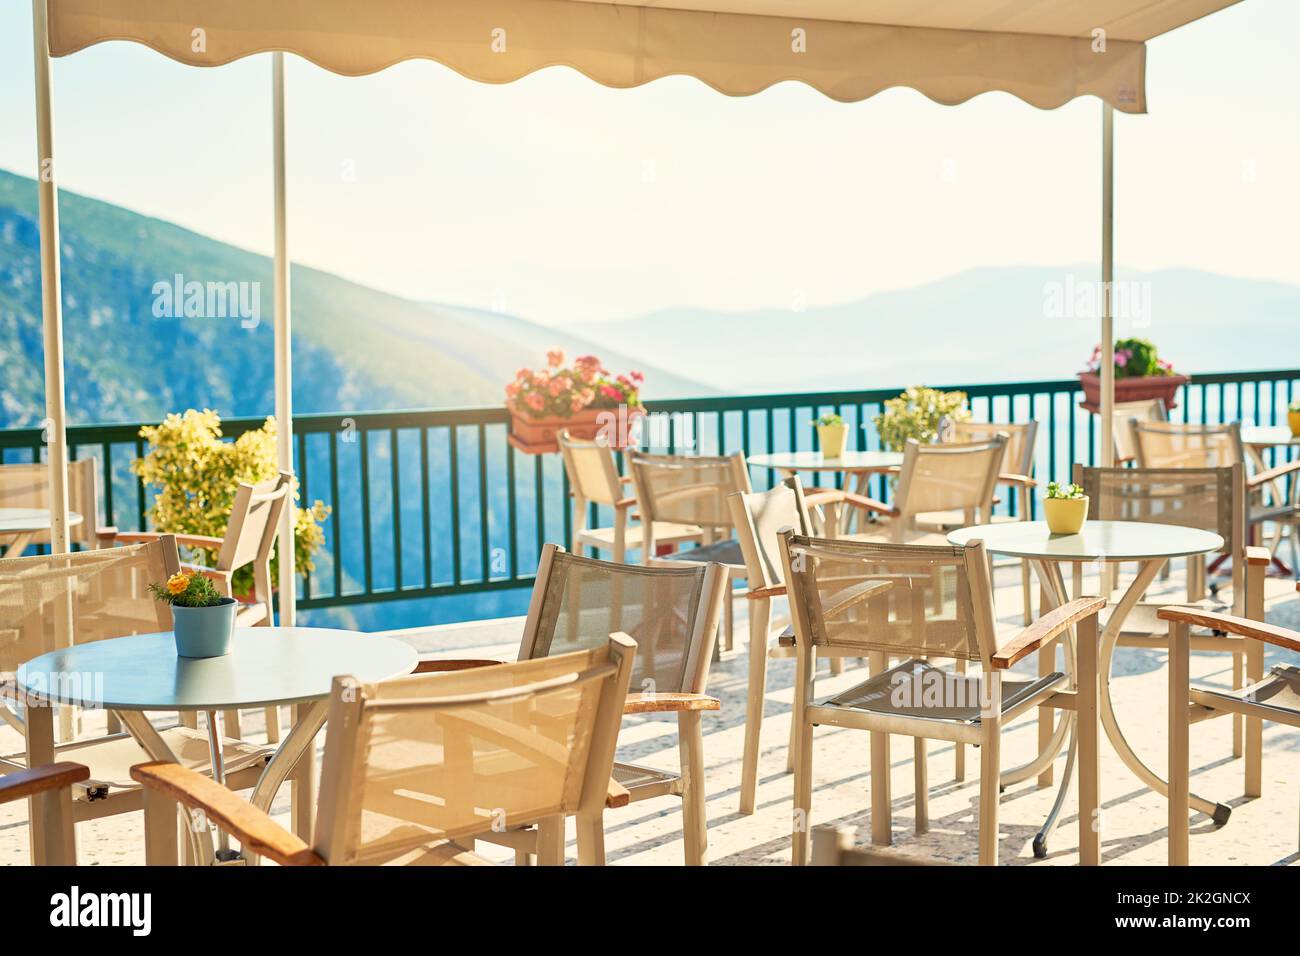 Commencer la journée en regardant cette vue. Vue d'arrière-plan d'un beau paysage depuis un balcon en méditerranée pendant la journée. Banque D'Images